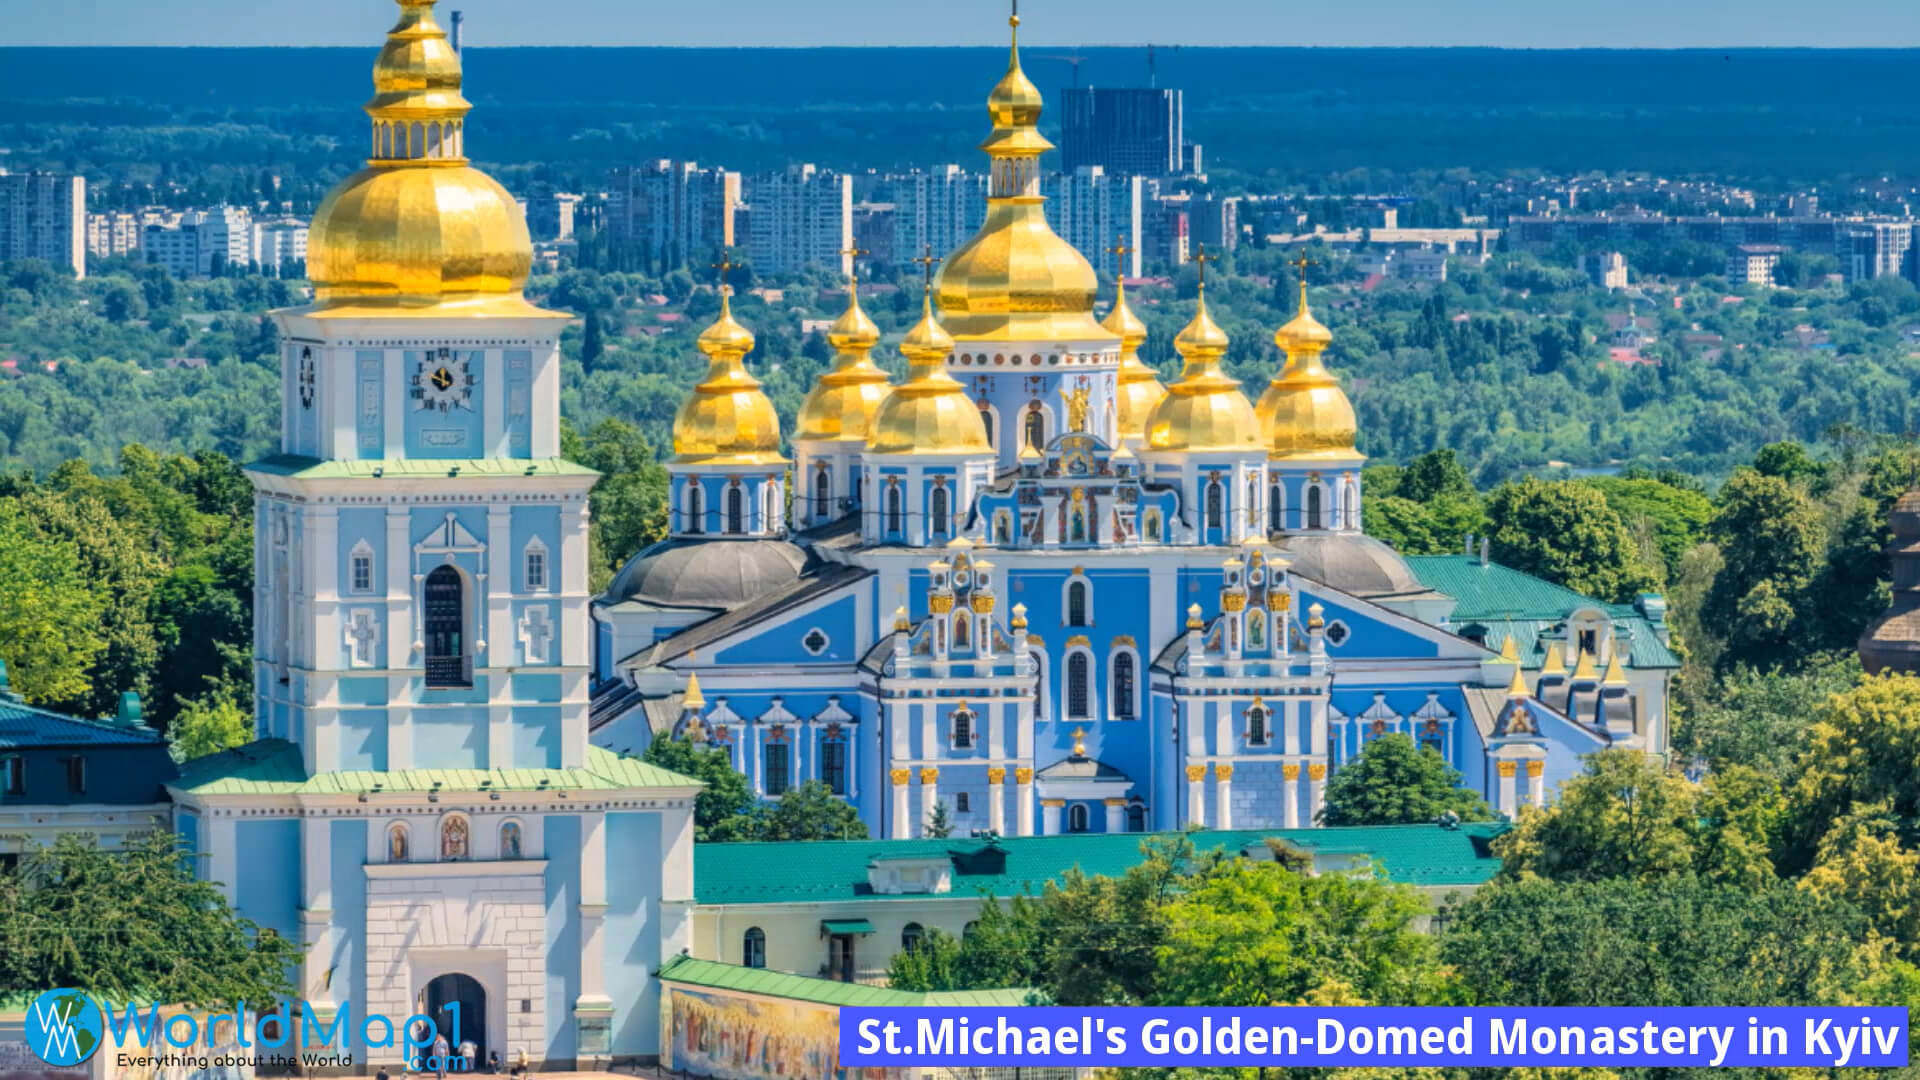 St Michael's Golden-Gewölbtes Kloster in Kiew